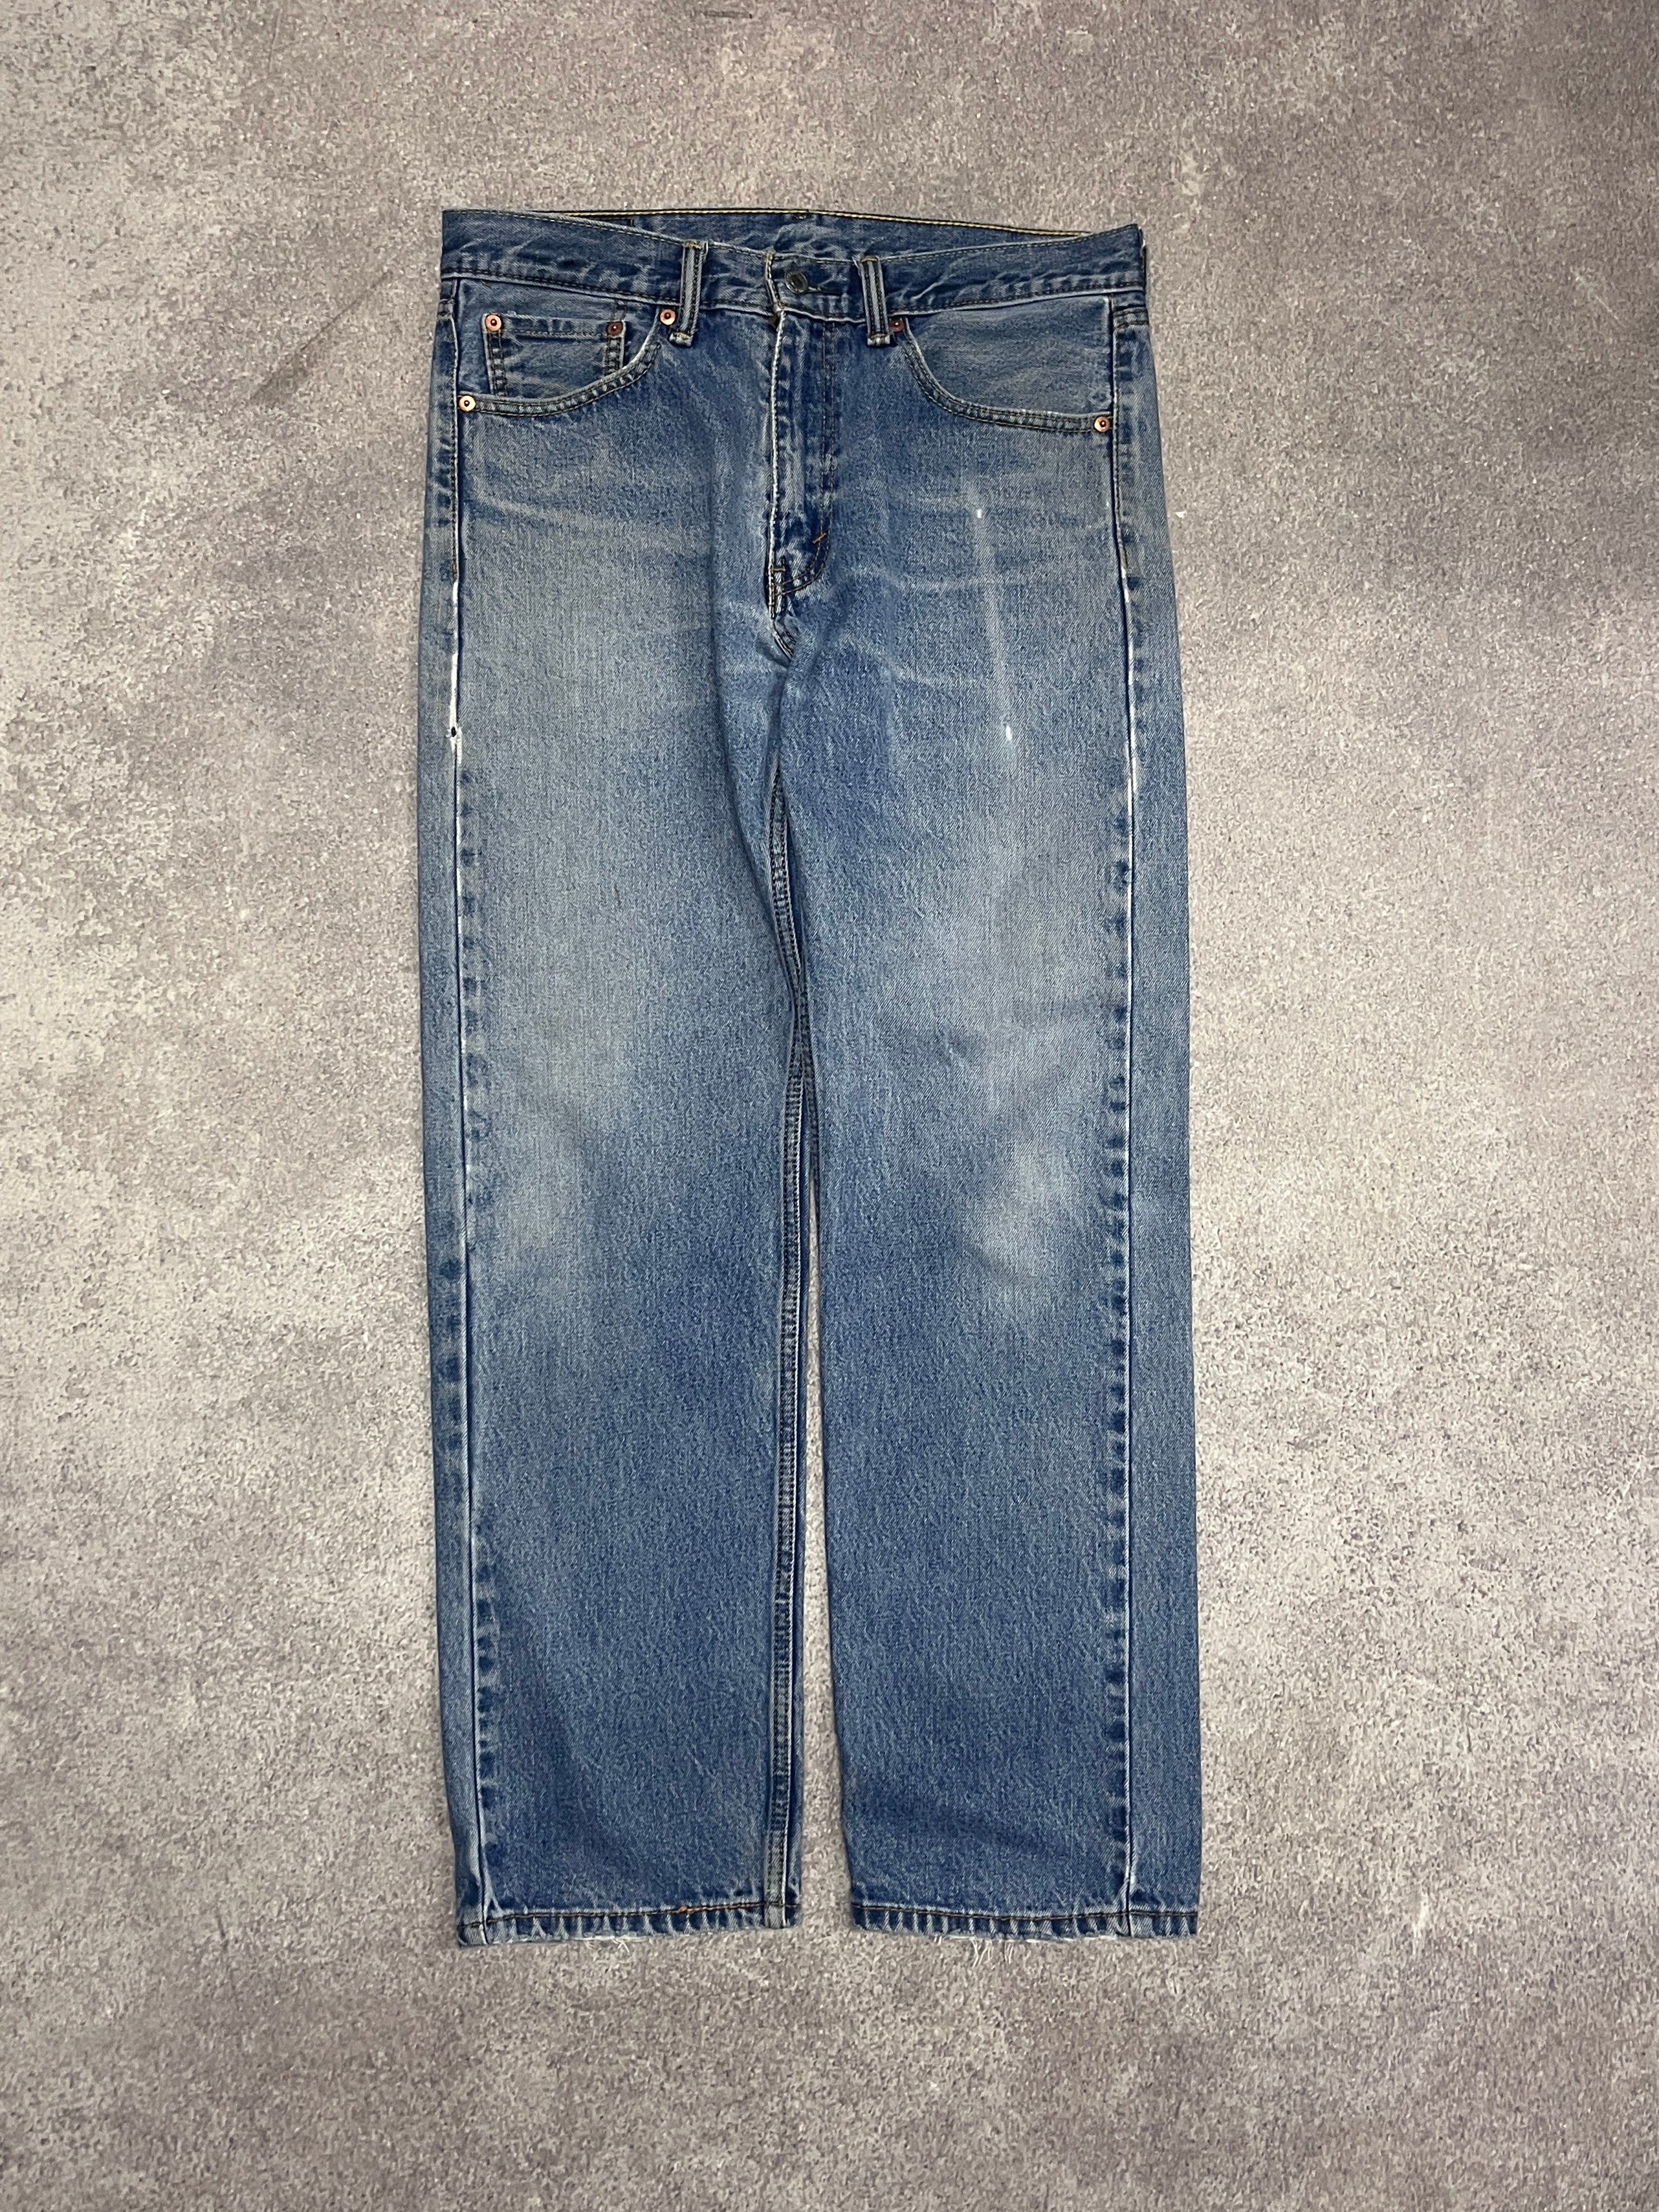 Vintage Levi 505 Denim Jeans Blue // W33 L30 - RHAGHOUSE VINTAGE